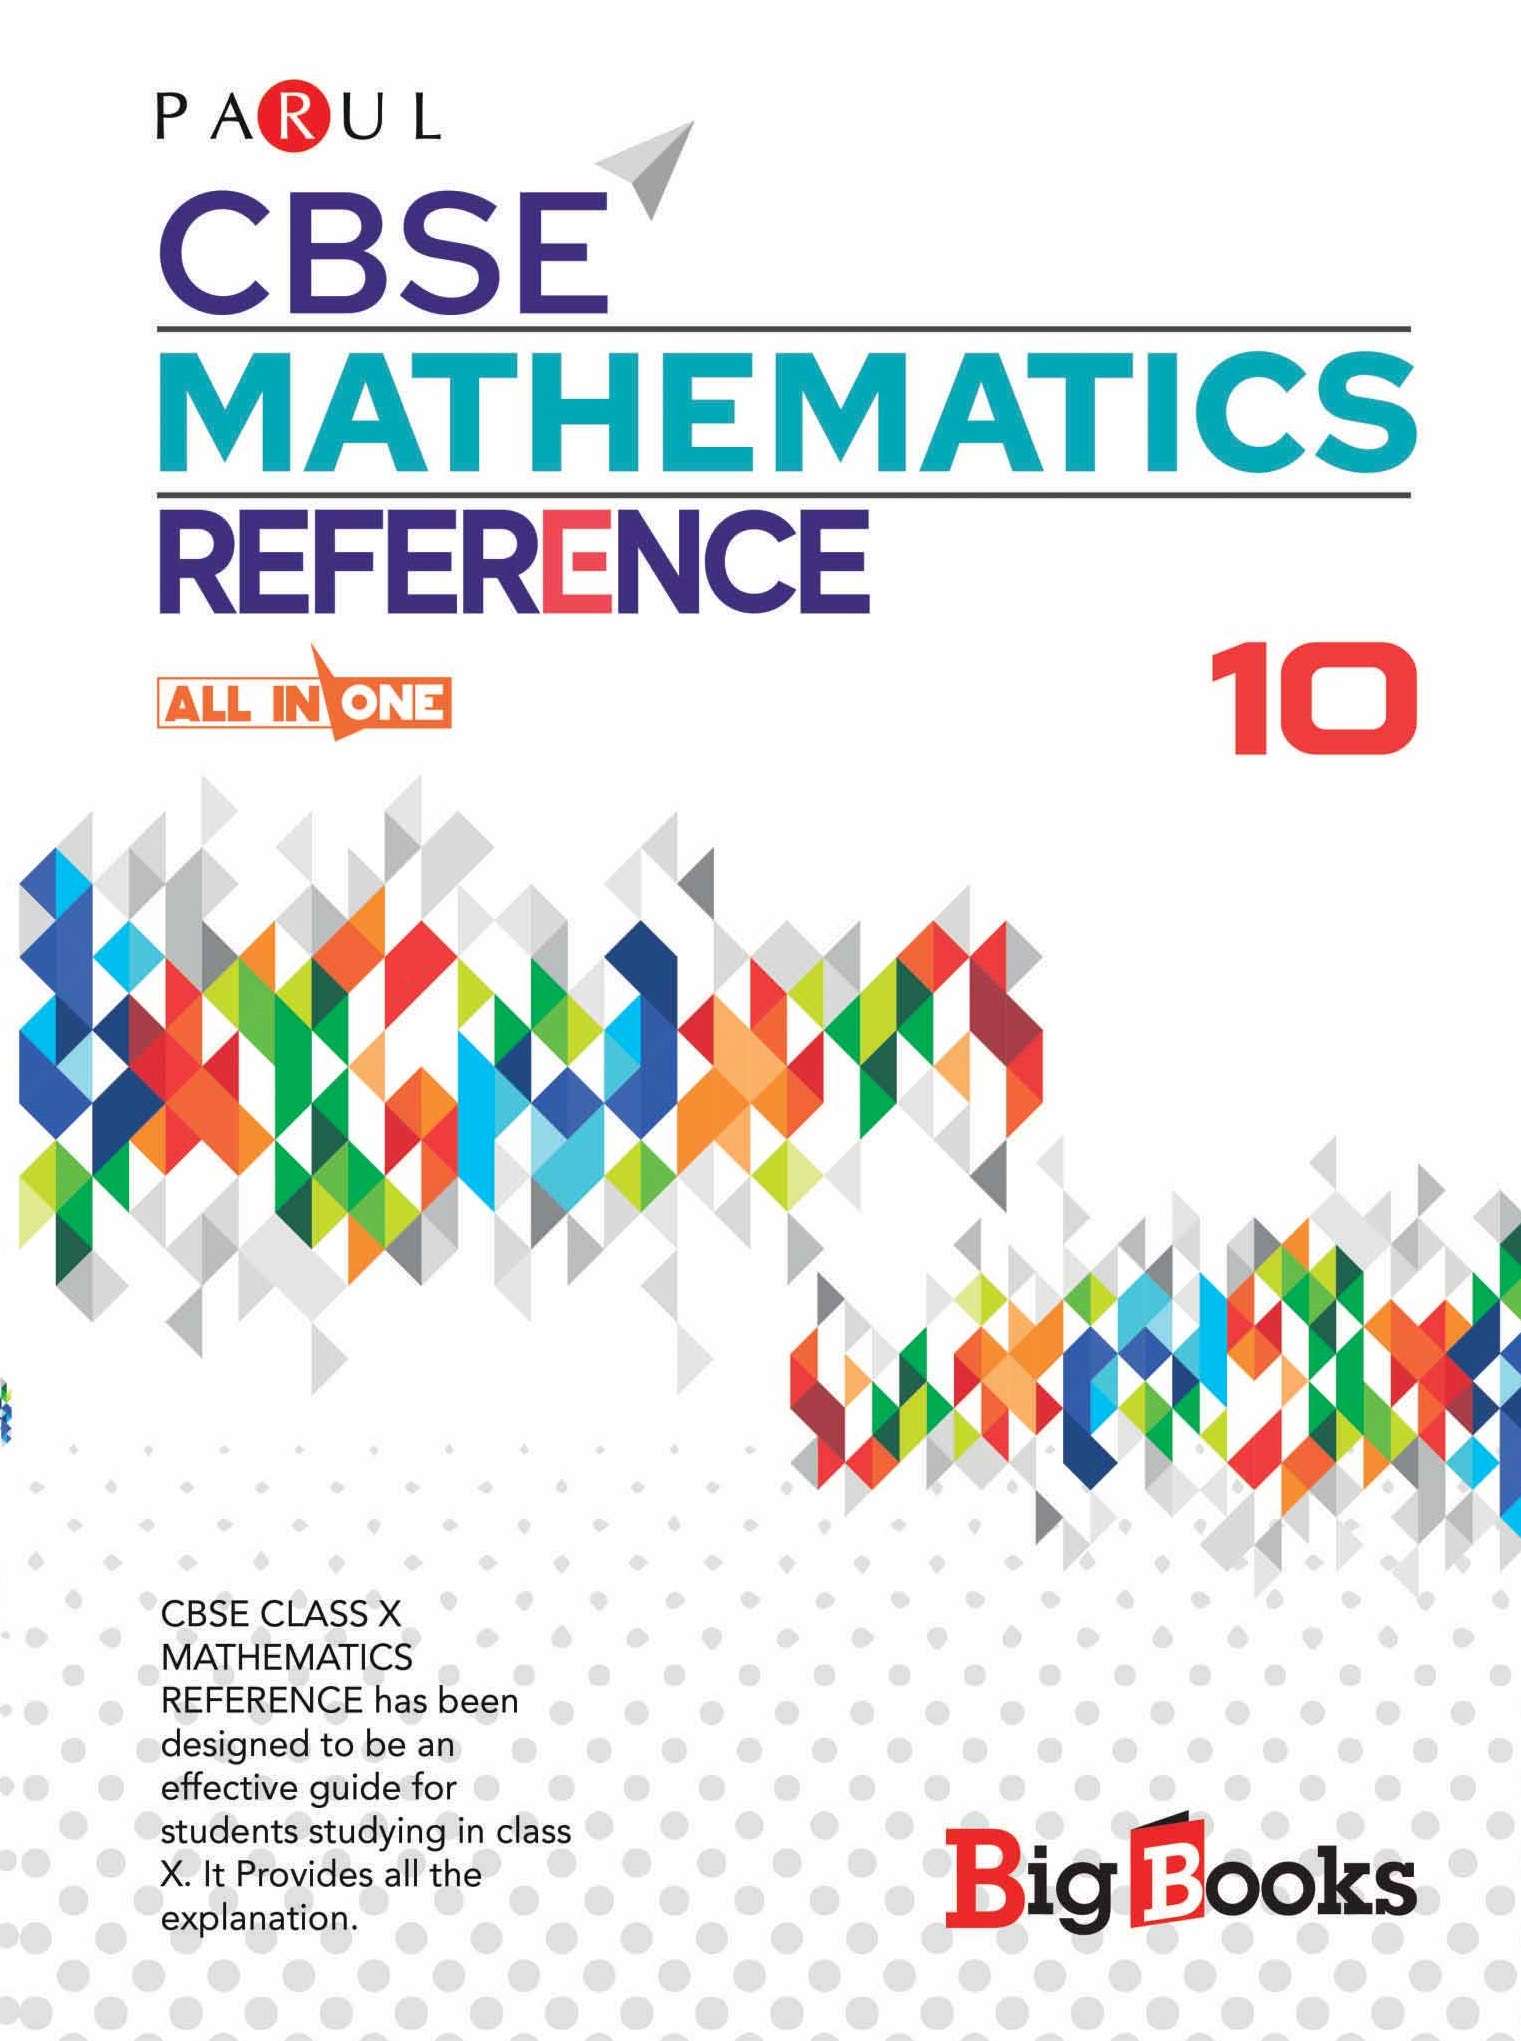 Best CBSE Mathematics book for 10